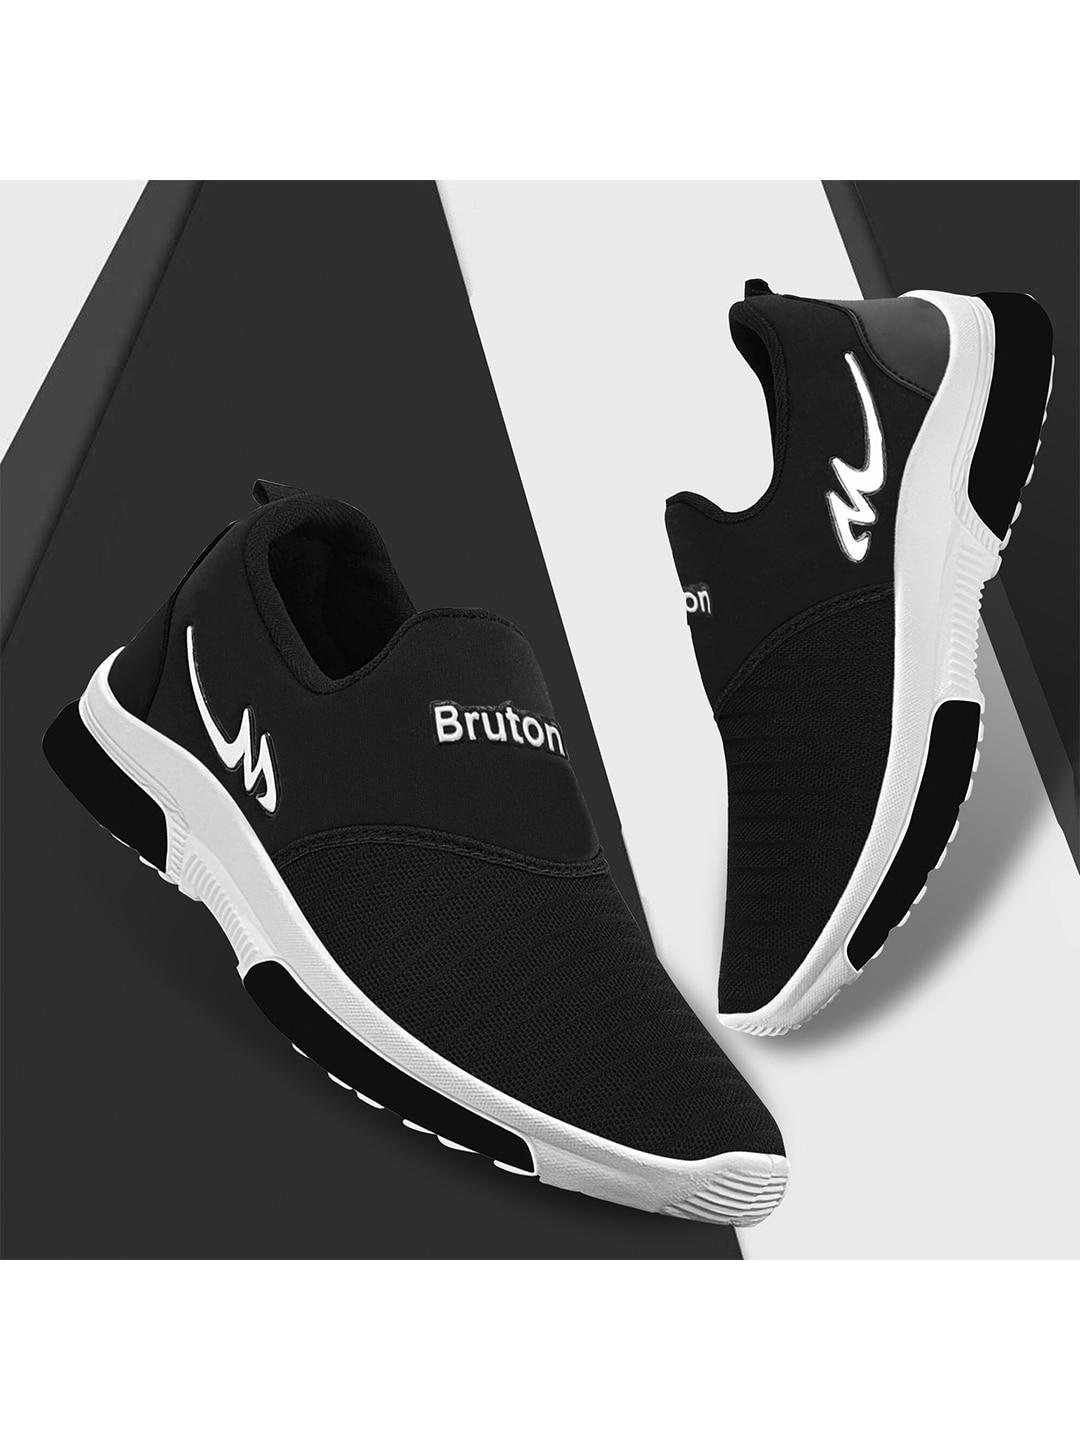 bruton-men-lightweight-mesh-running-shoes